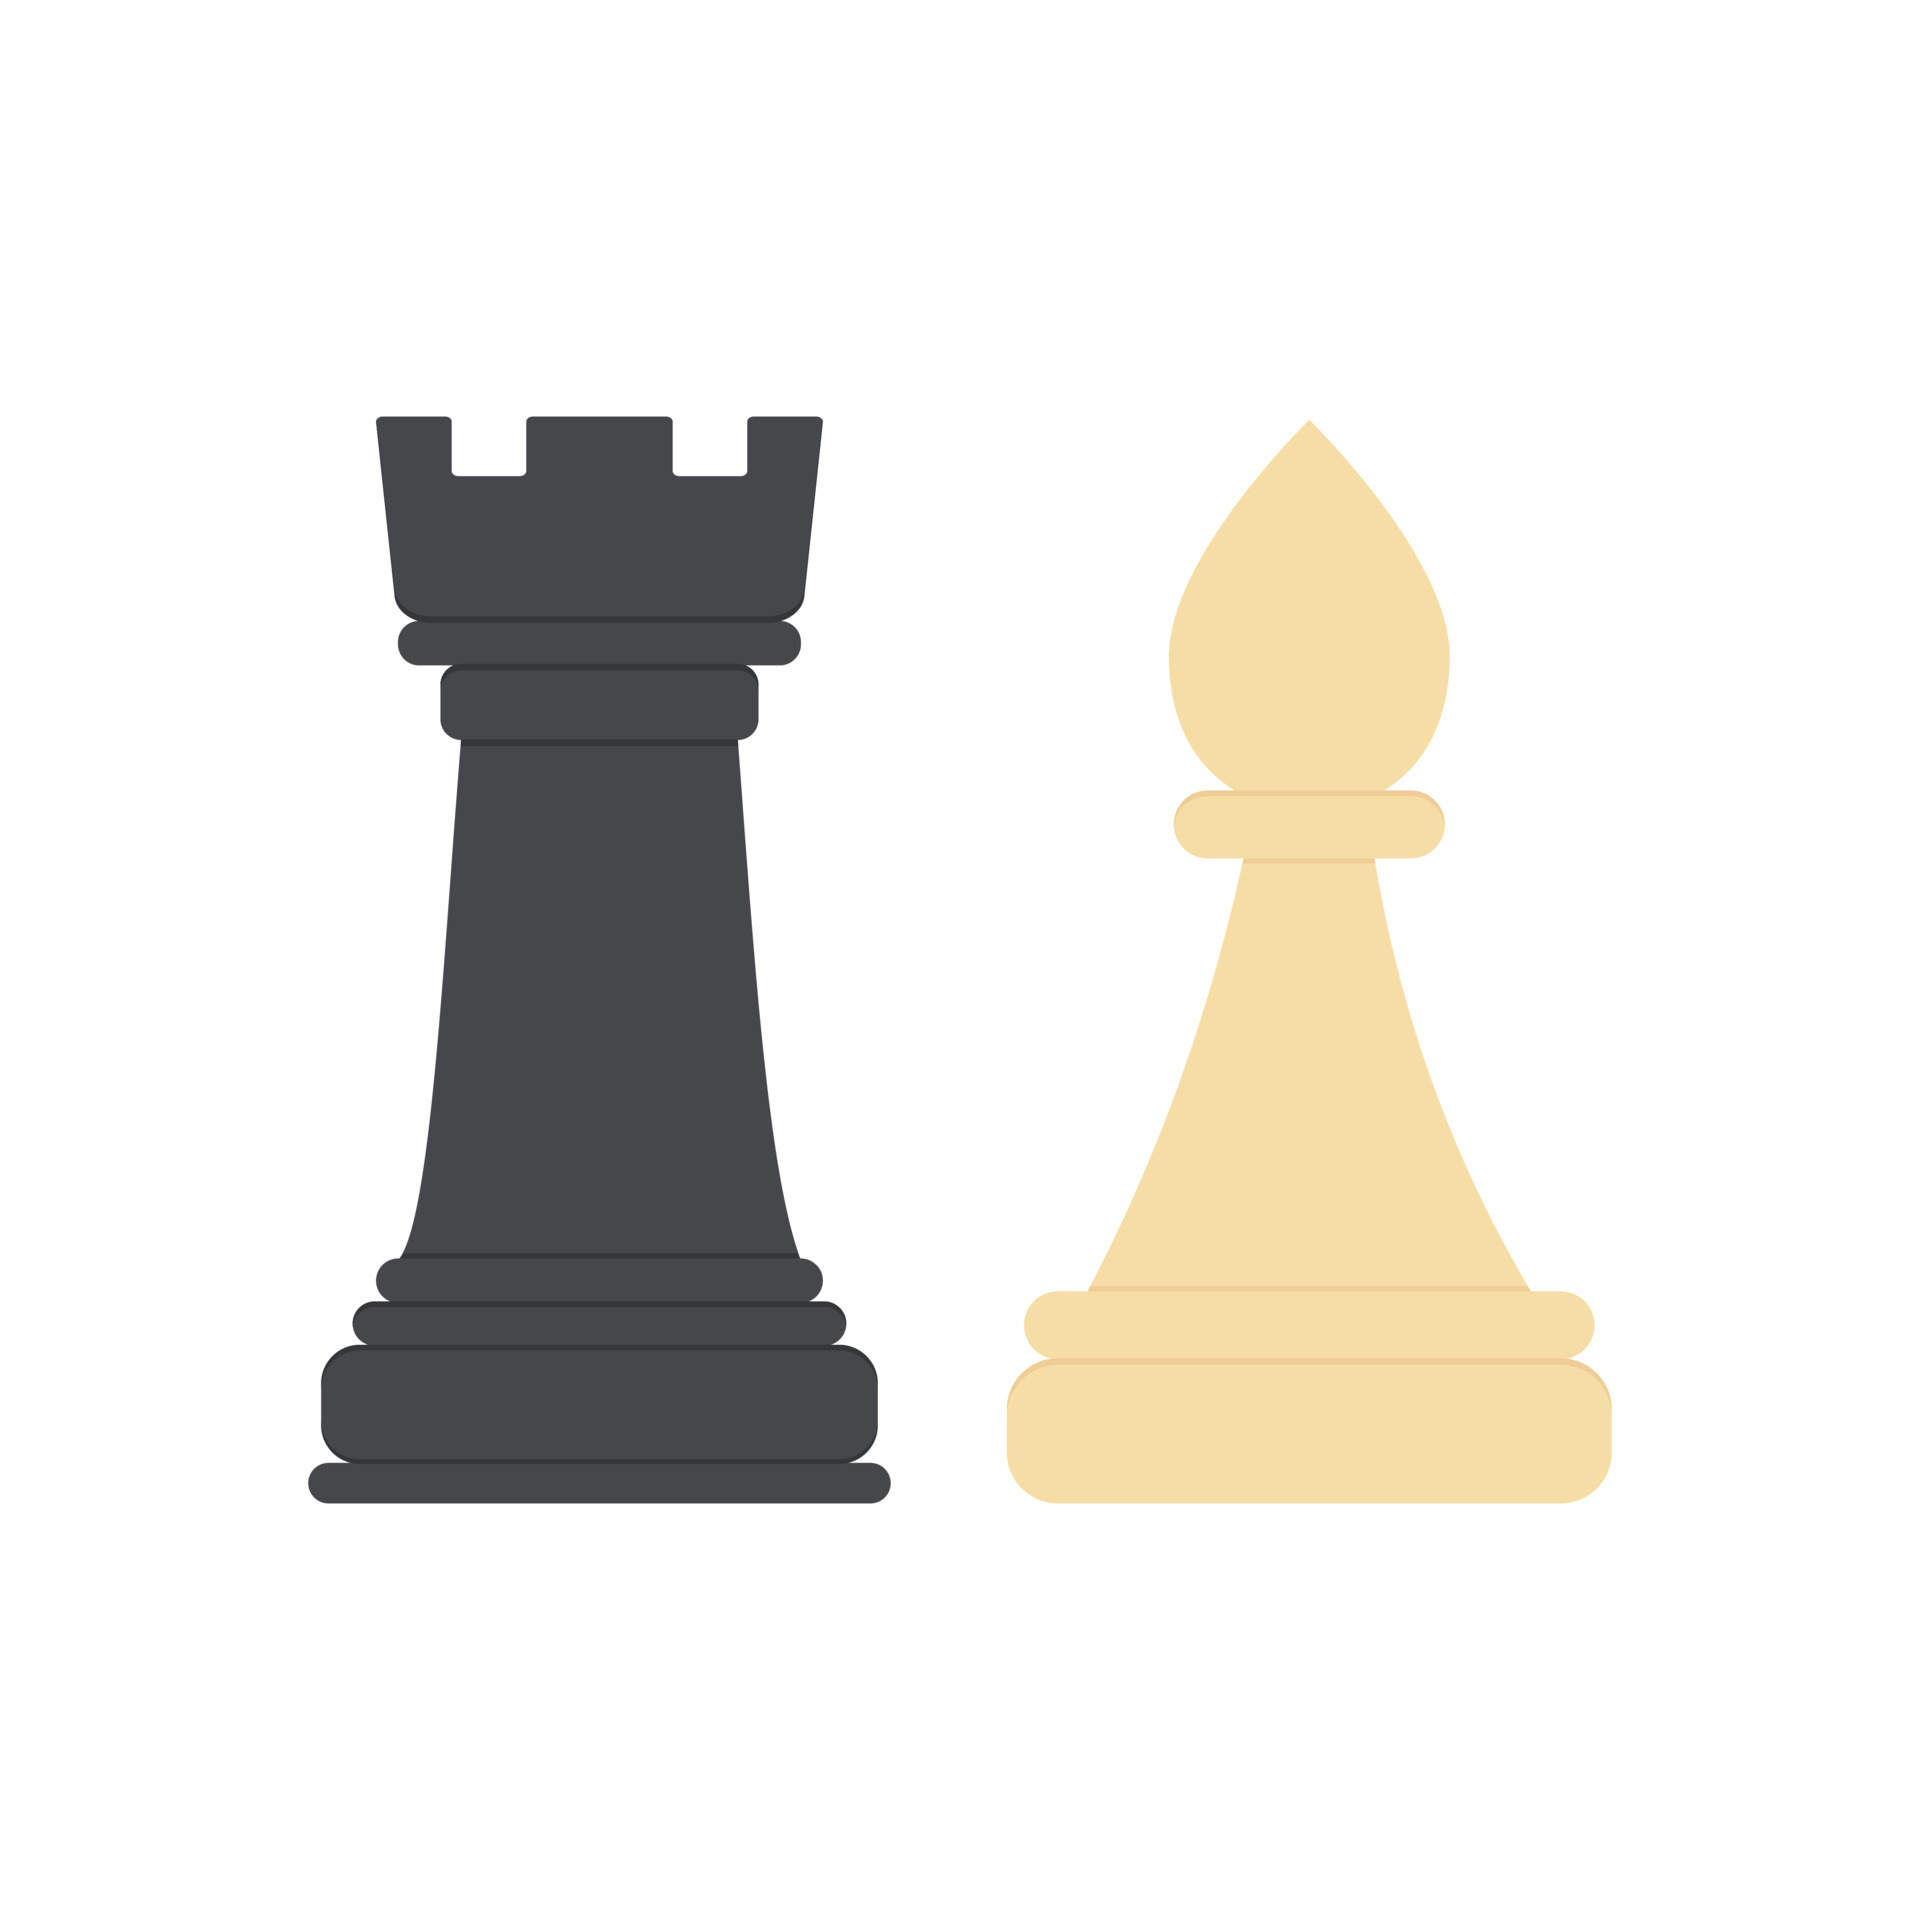 peças de xadrez torre e bispo. figuras de peças de xadrez preto e branco.  ícone colorido para jogar xadrez. ilustração vetorial em fundo branco  18928485 Vetor no Vecteezy